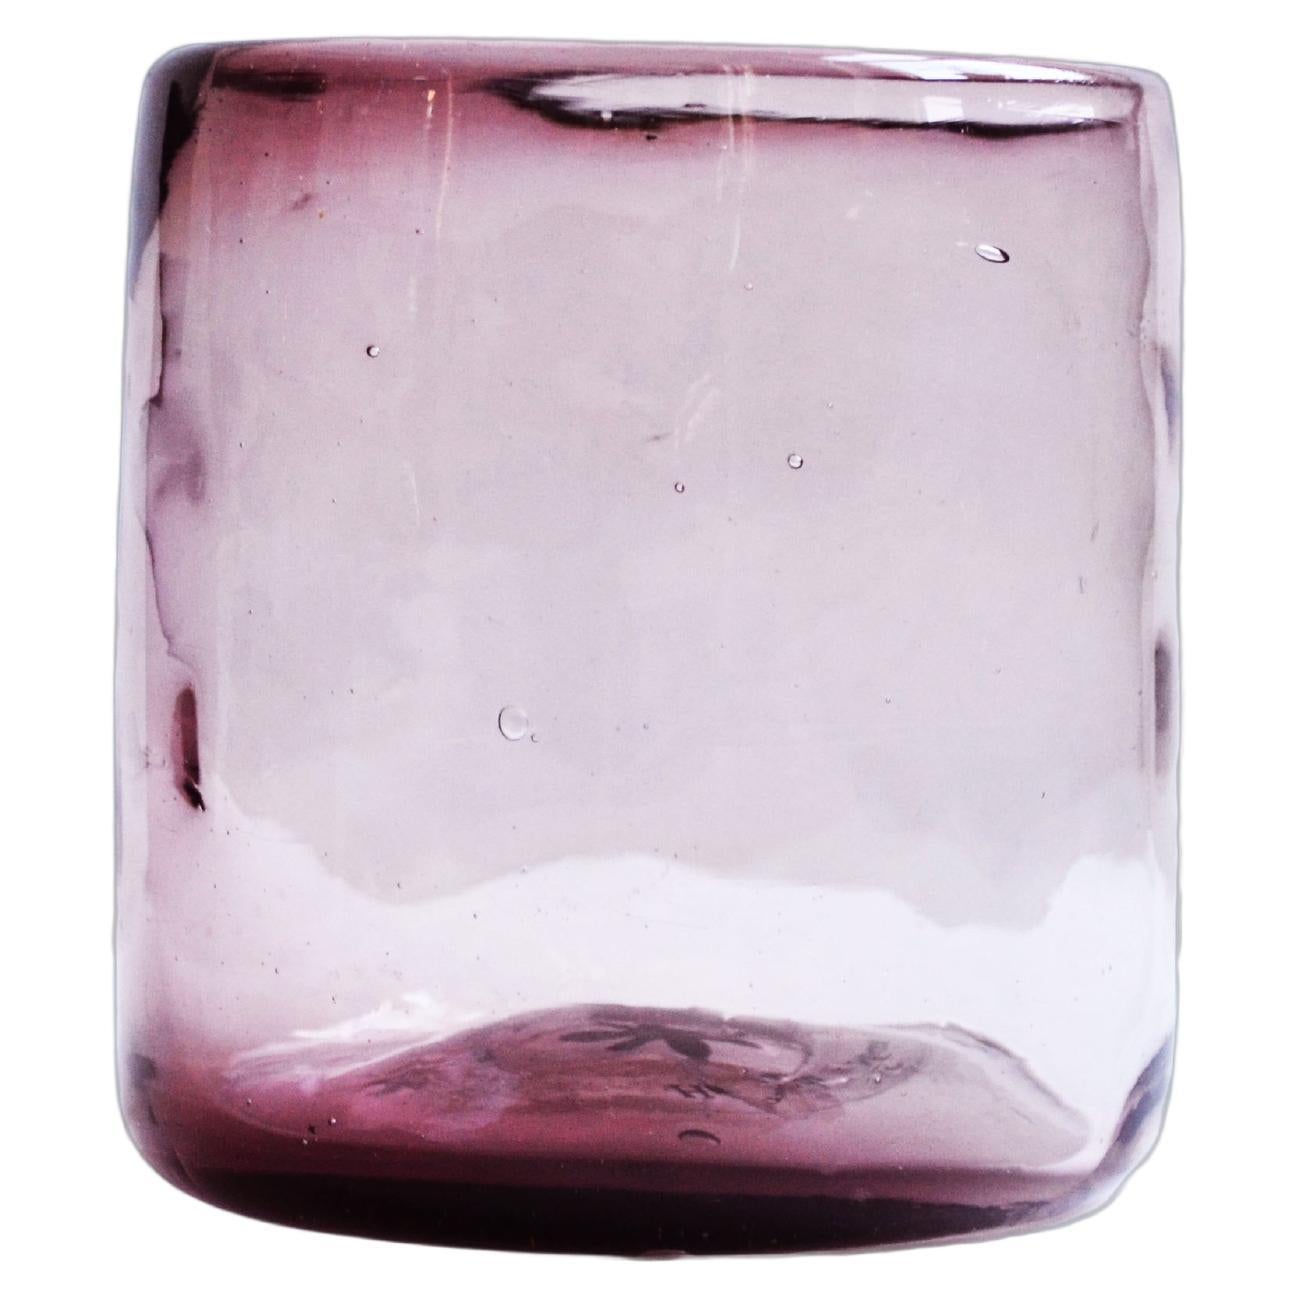 8 gobelets à cocktail rose, verre organique irrégulier soufflé à la main 100 % recyclé